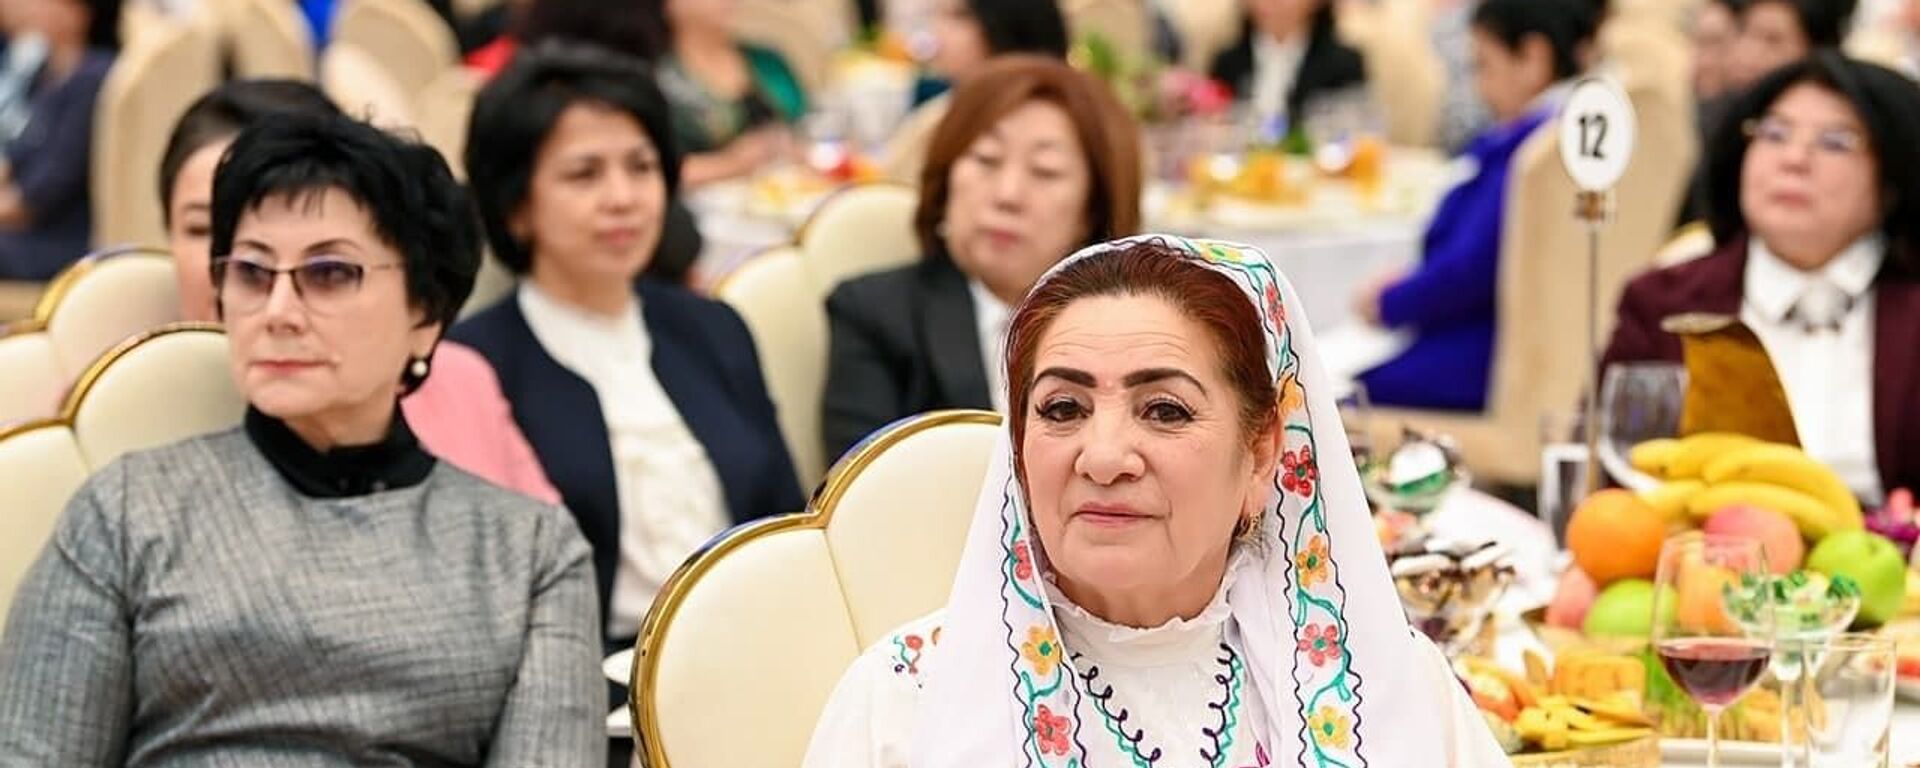 Президент поздравил женщин с праздником - Sputnik Узбекистан, 1920, 06.03.2021